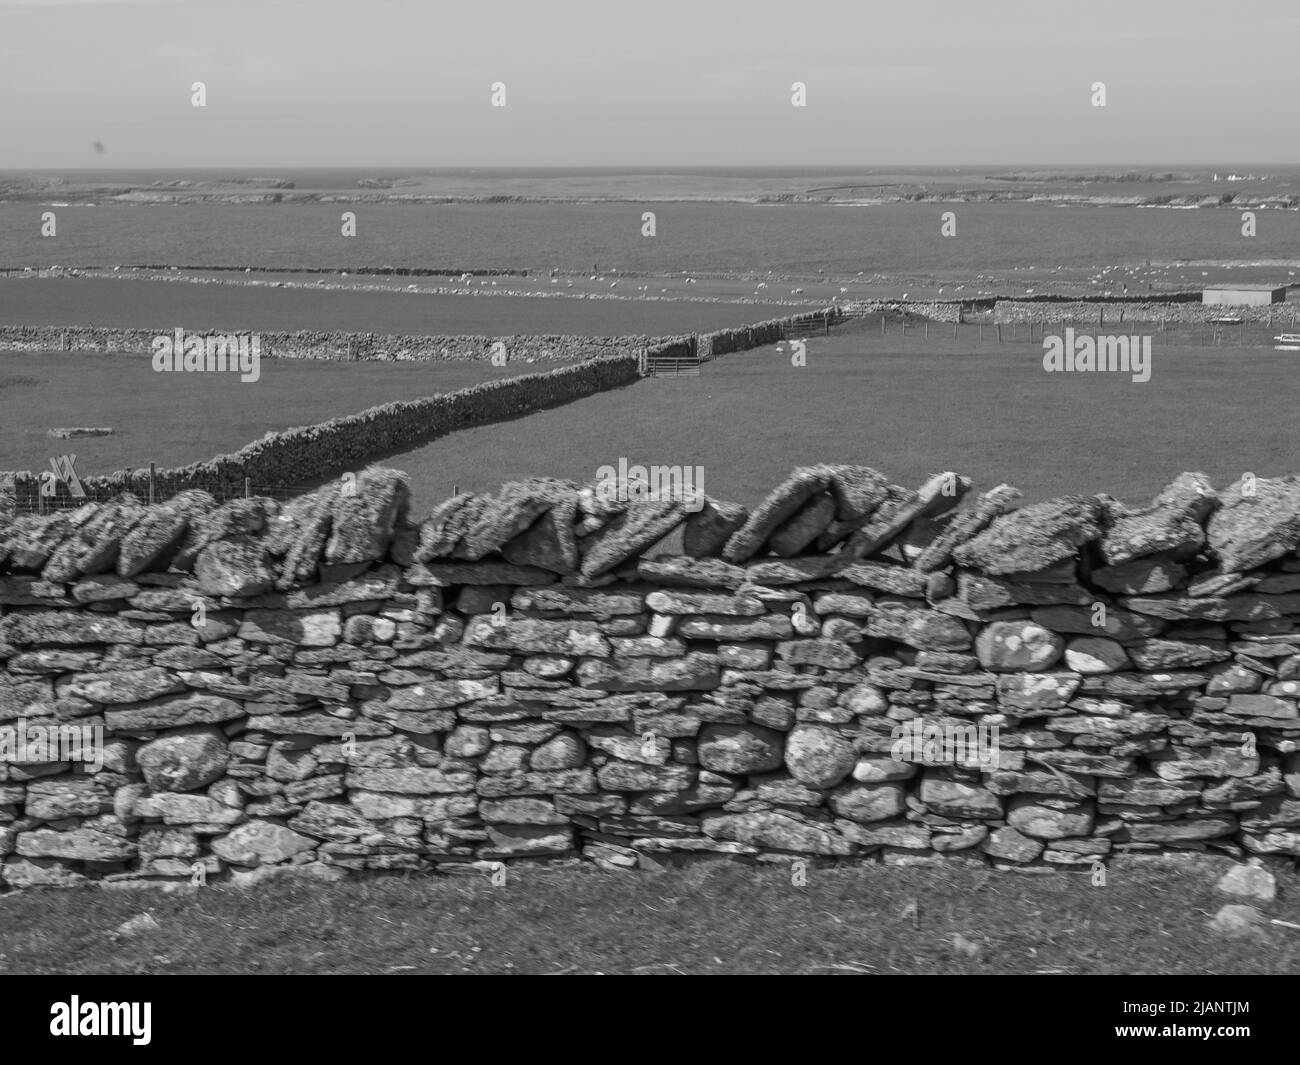 L'île Shetland en écosse Banque D'Images